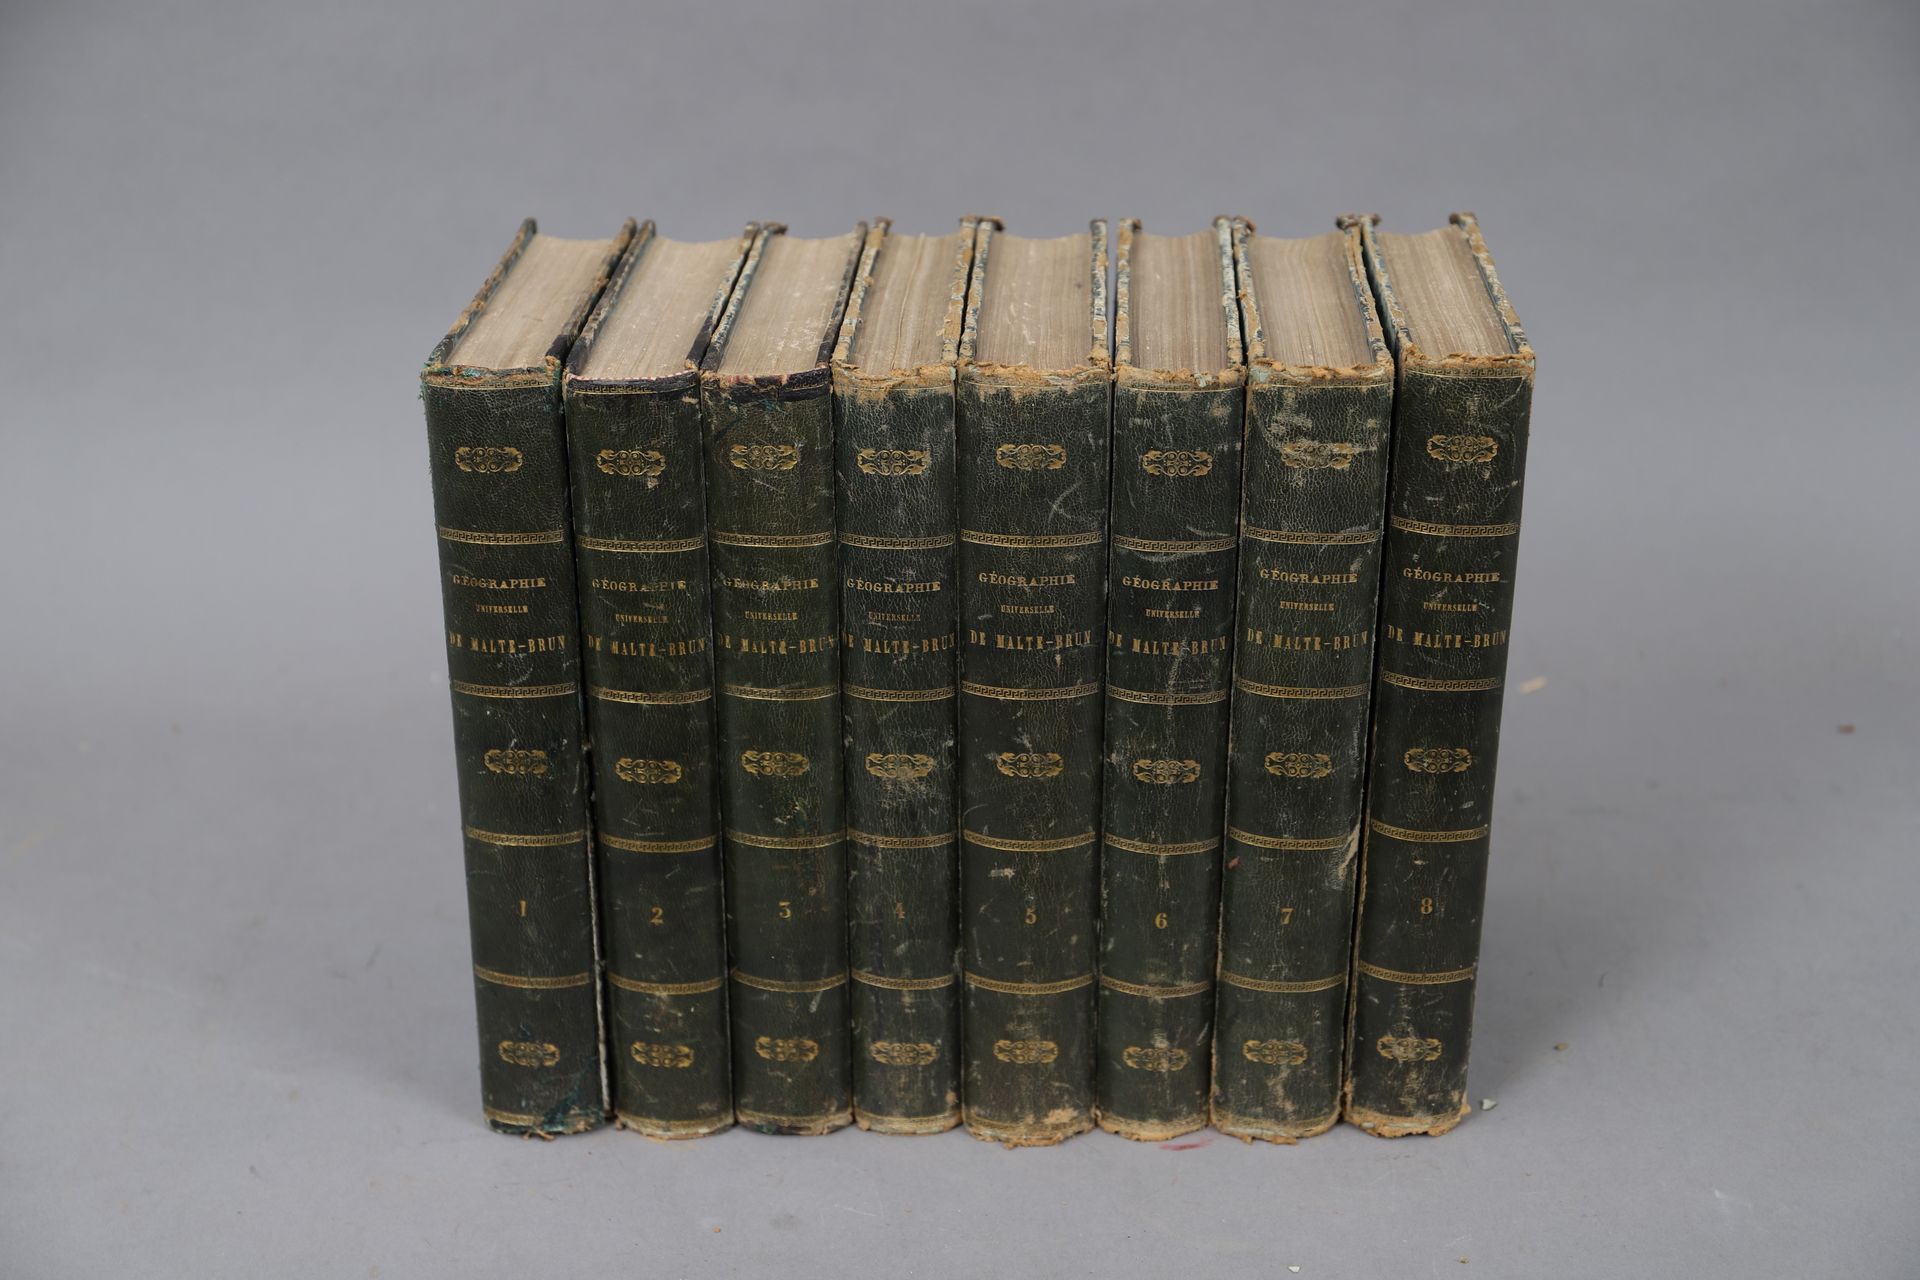 Null GEOGRAPHIE UNIVERSELLE de MALTE-BRUN

Paris 1864. 

8 volumes reliés.